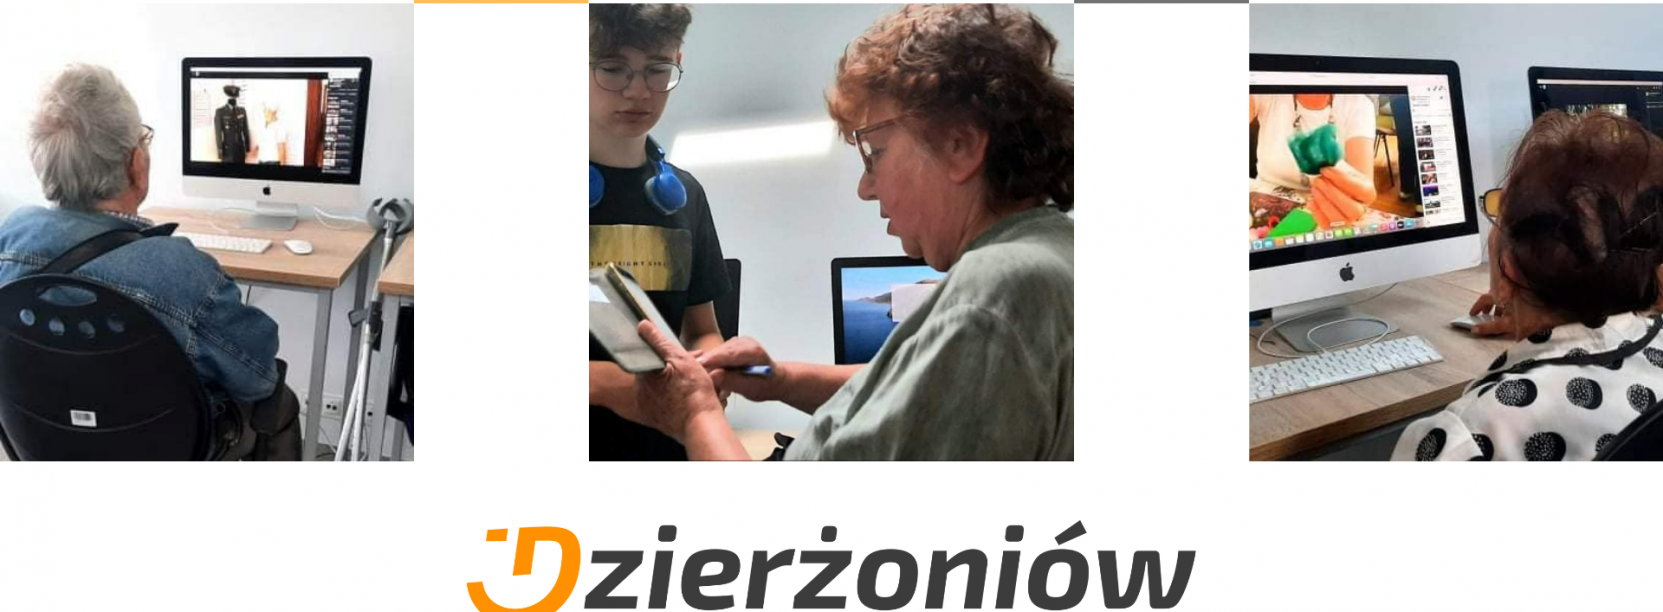 Kolaż zdjęć na których seniorzy uczą się obsługi komputera, logo Dzierżoniowa z hasłem Dzierżoniów nastraja pozytywnie 